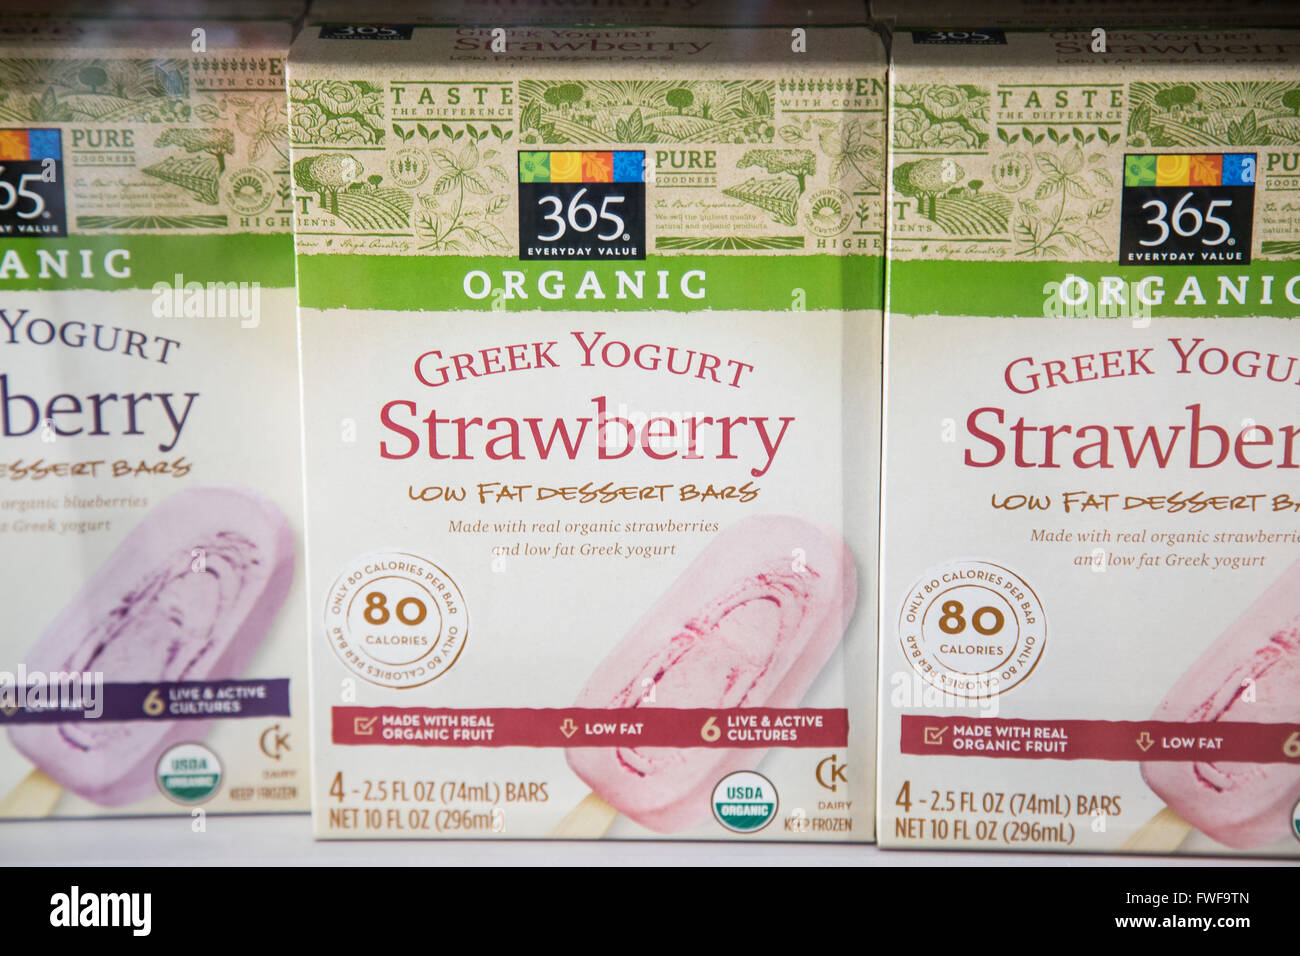 Eine Schachtel mit Whole Foods Marke 365 organischen gefrorenen Joghurt Dessert Bars. Stockfoto